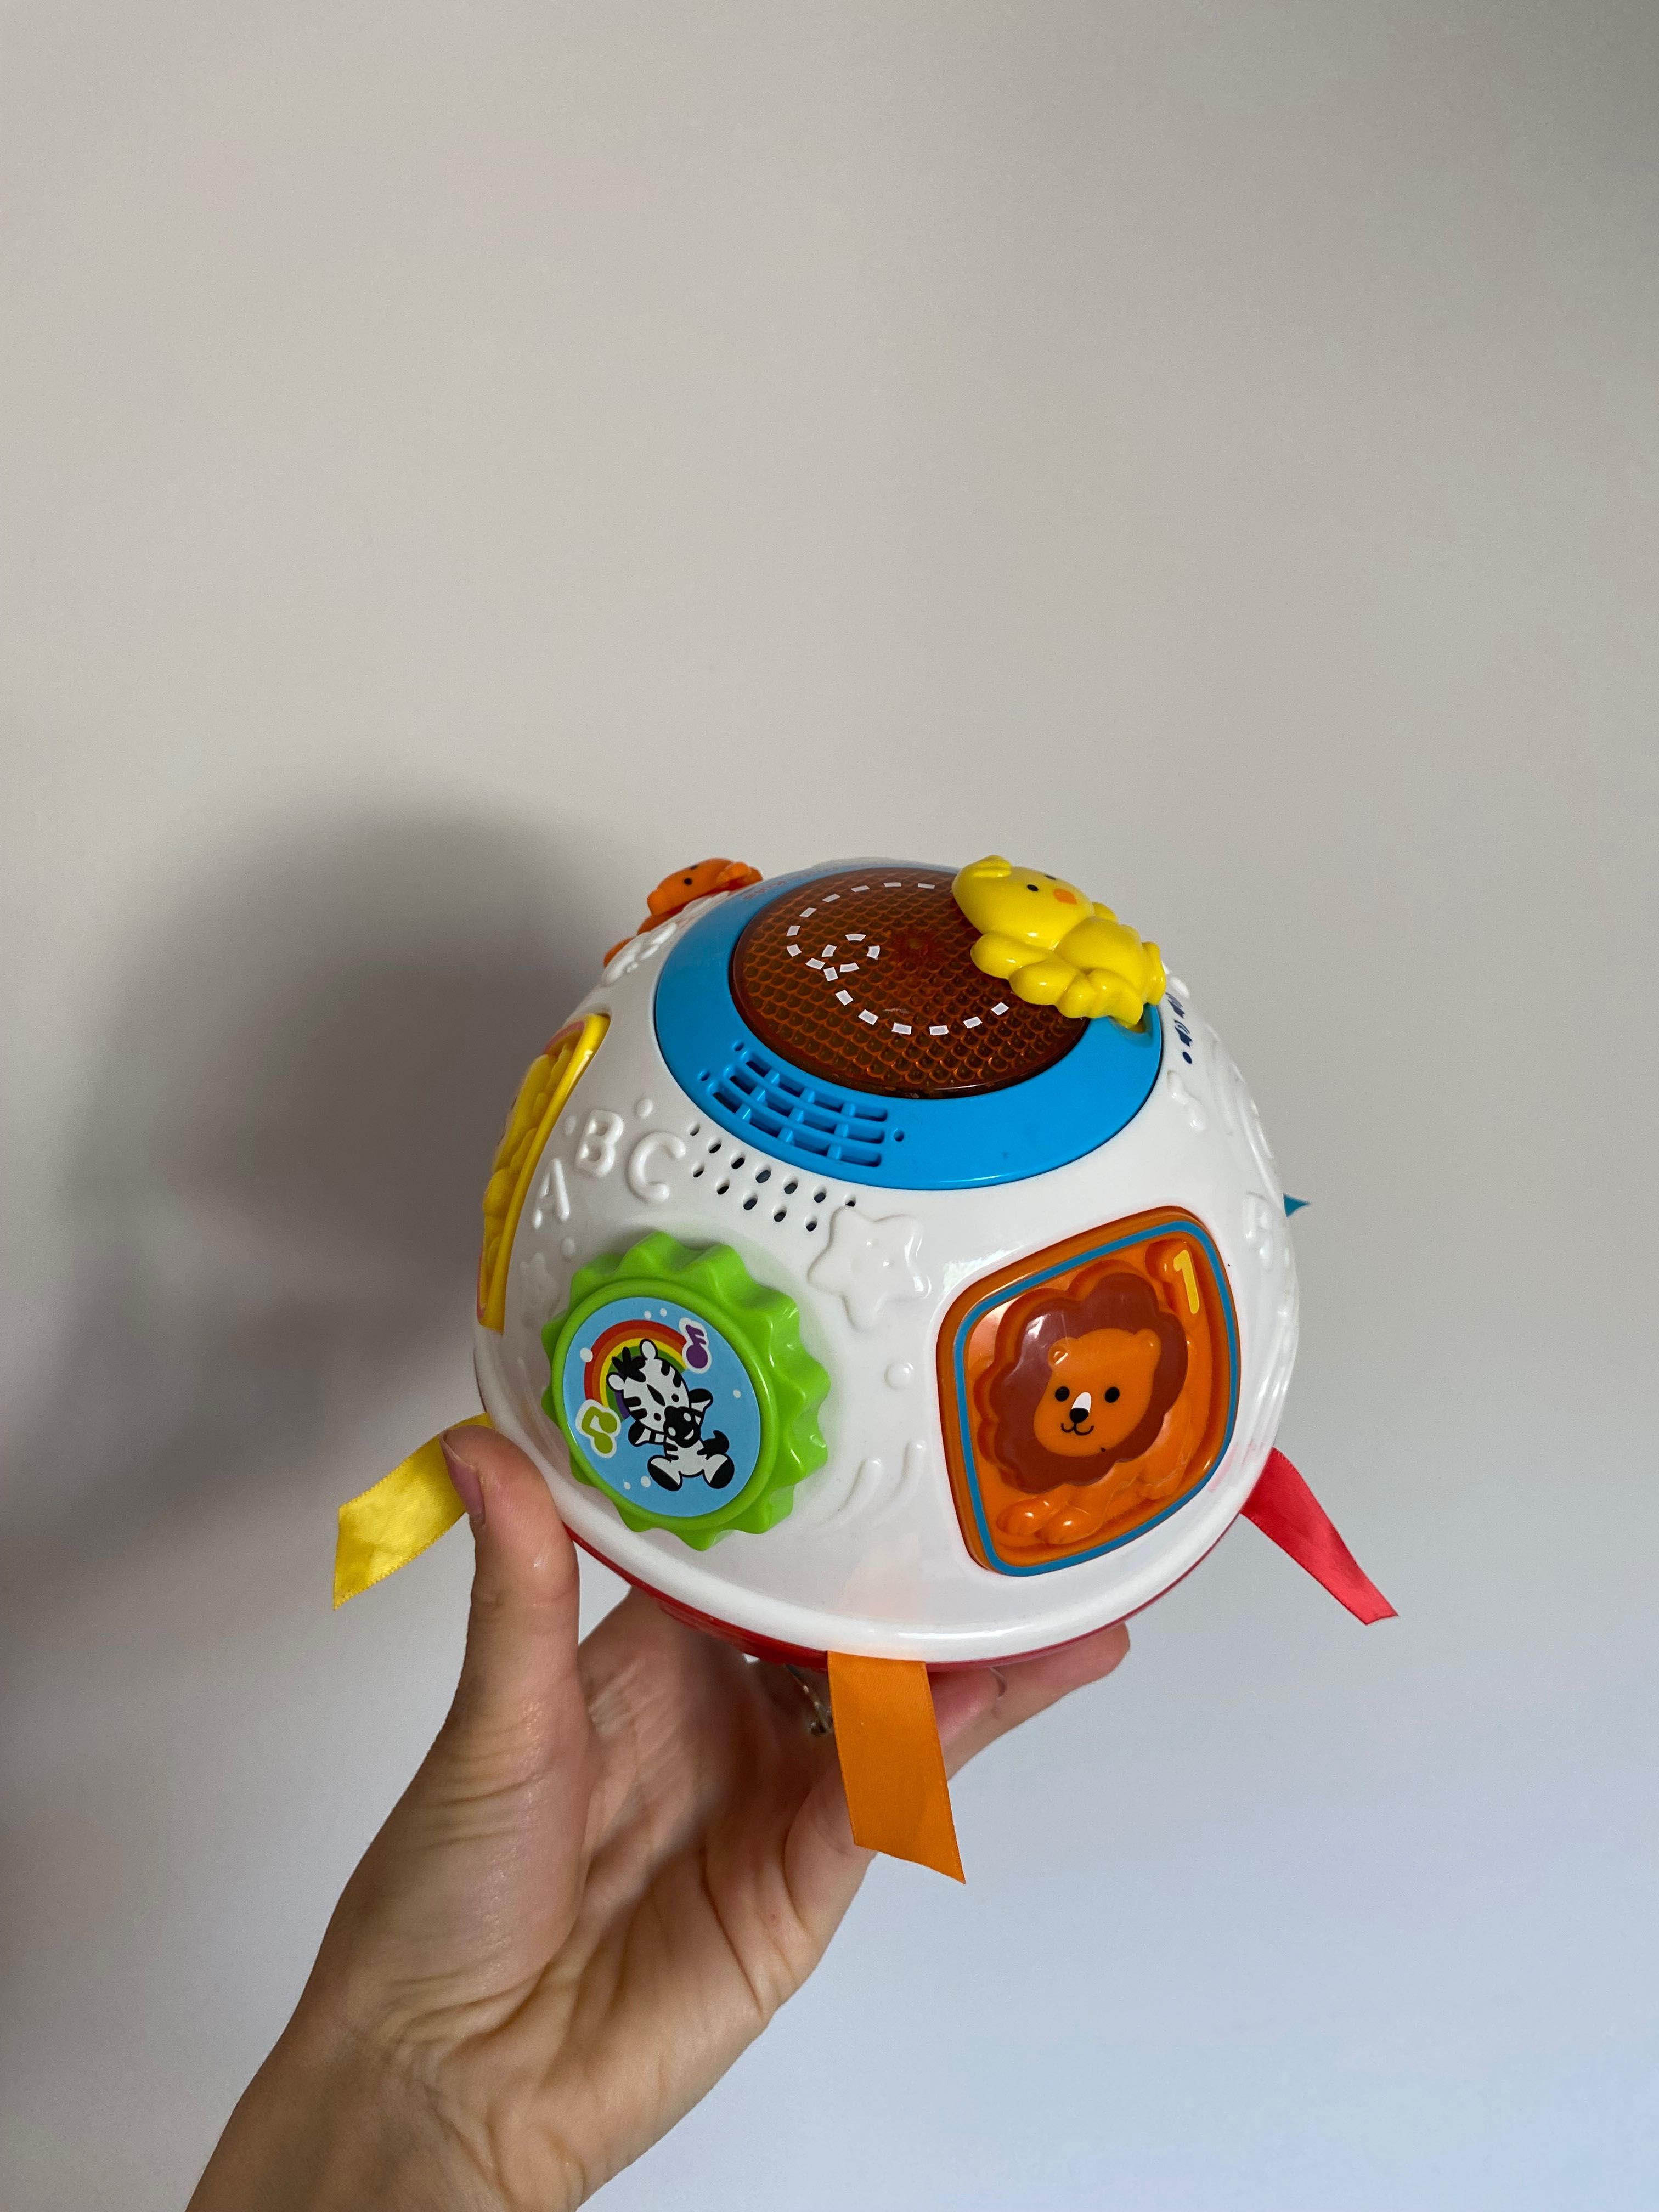 Zabawki 6 mies+ aktywizujące interaktywne kostka edukacyjna piłka hula